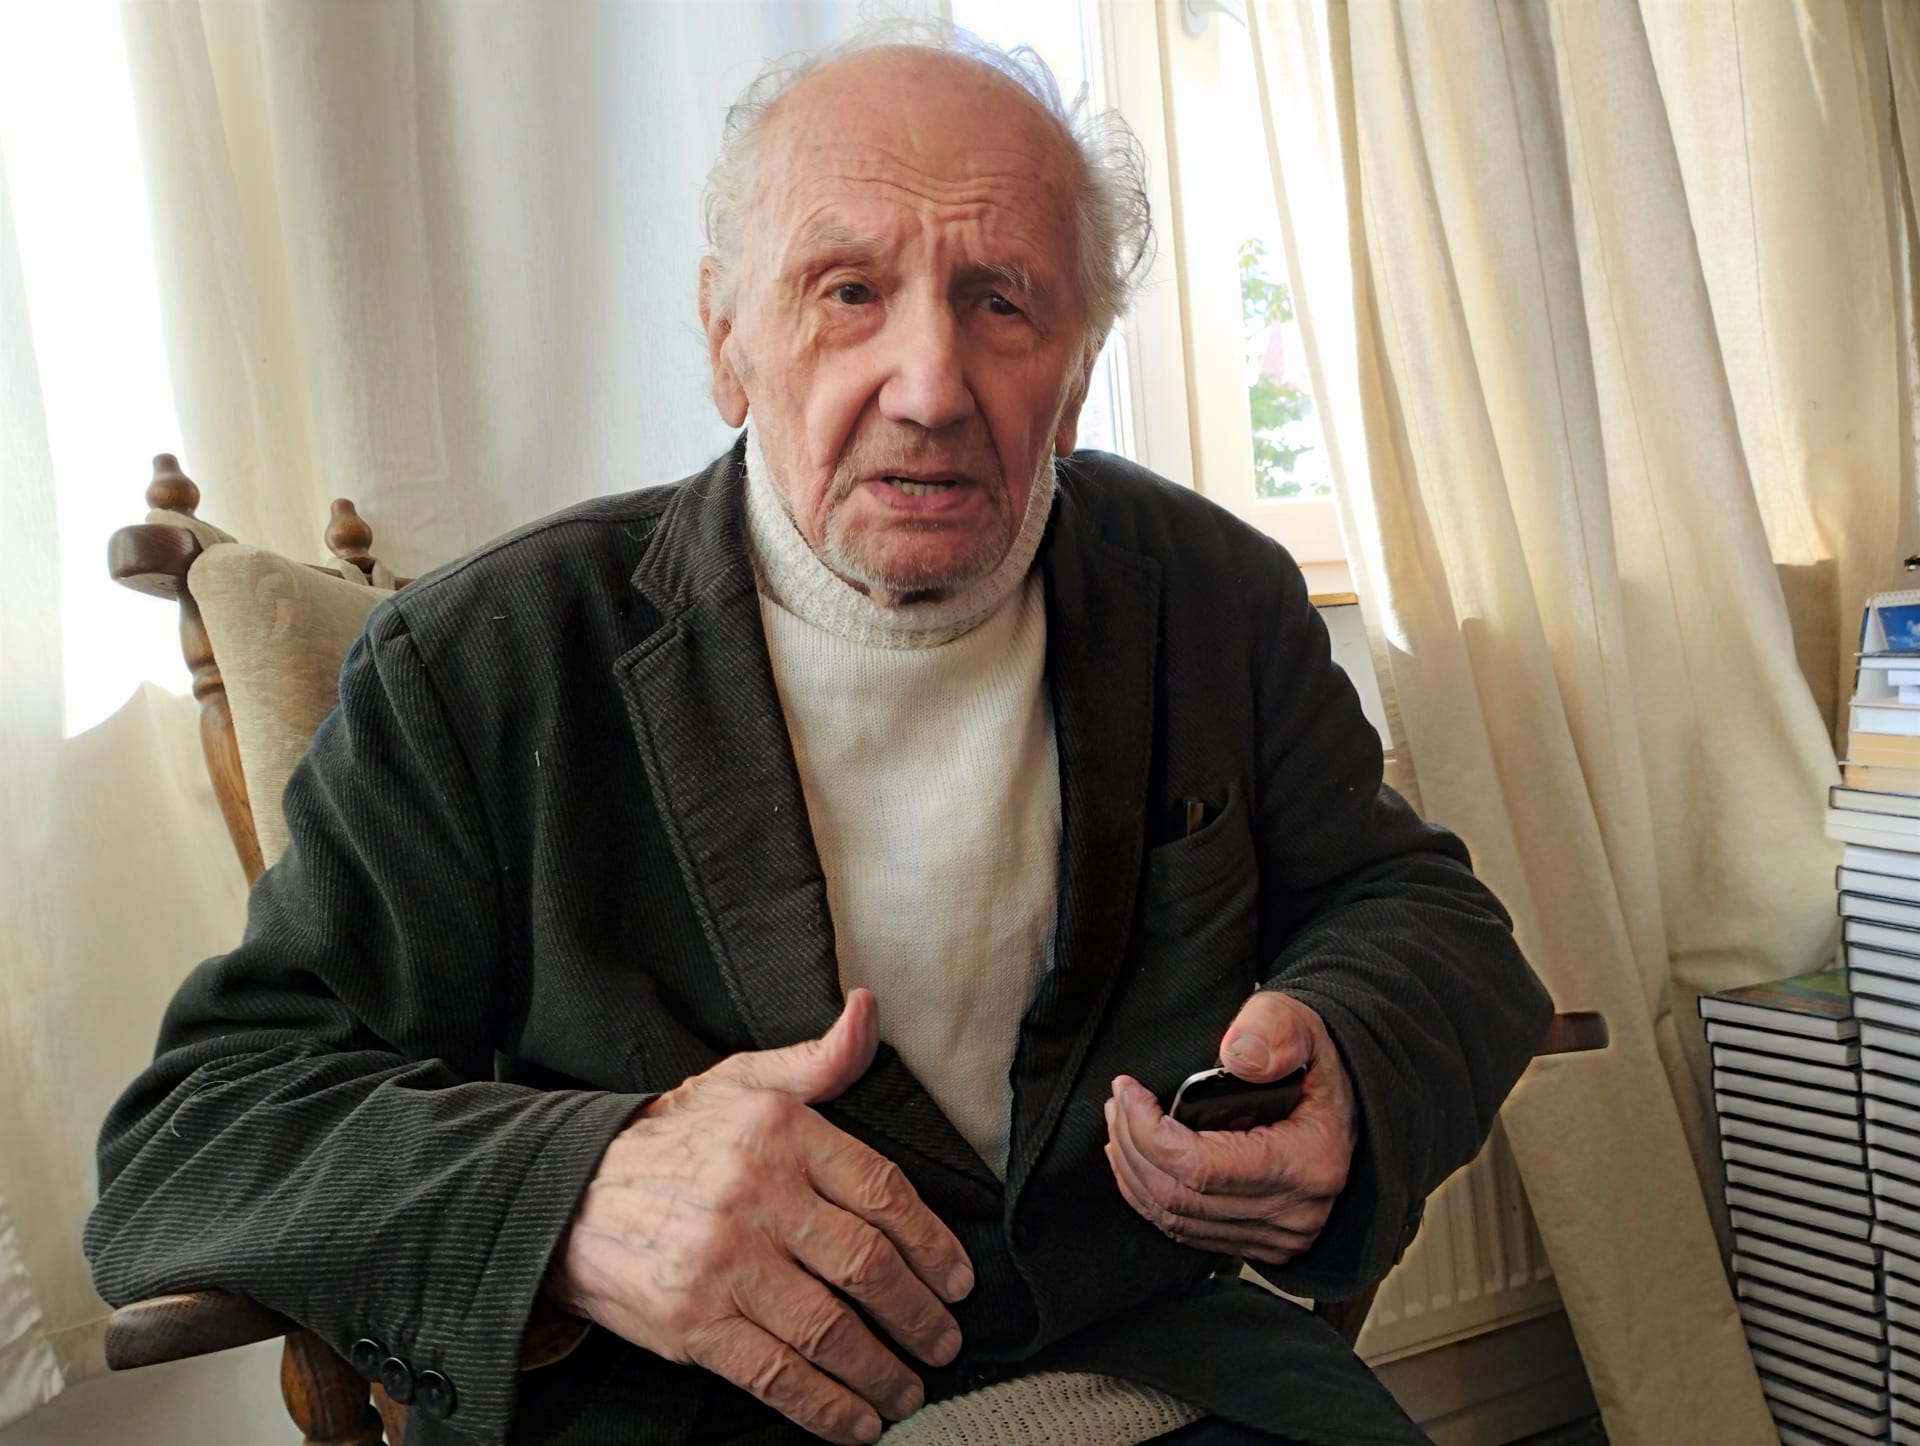 Velebný kmet z obecních voleb. Josef Orszulík, jeden ze tří nejstarších kandidátů pro komunální volby na Moravě a ve Slezsku. V červnu oslavil 92. narozeniny.